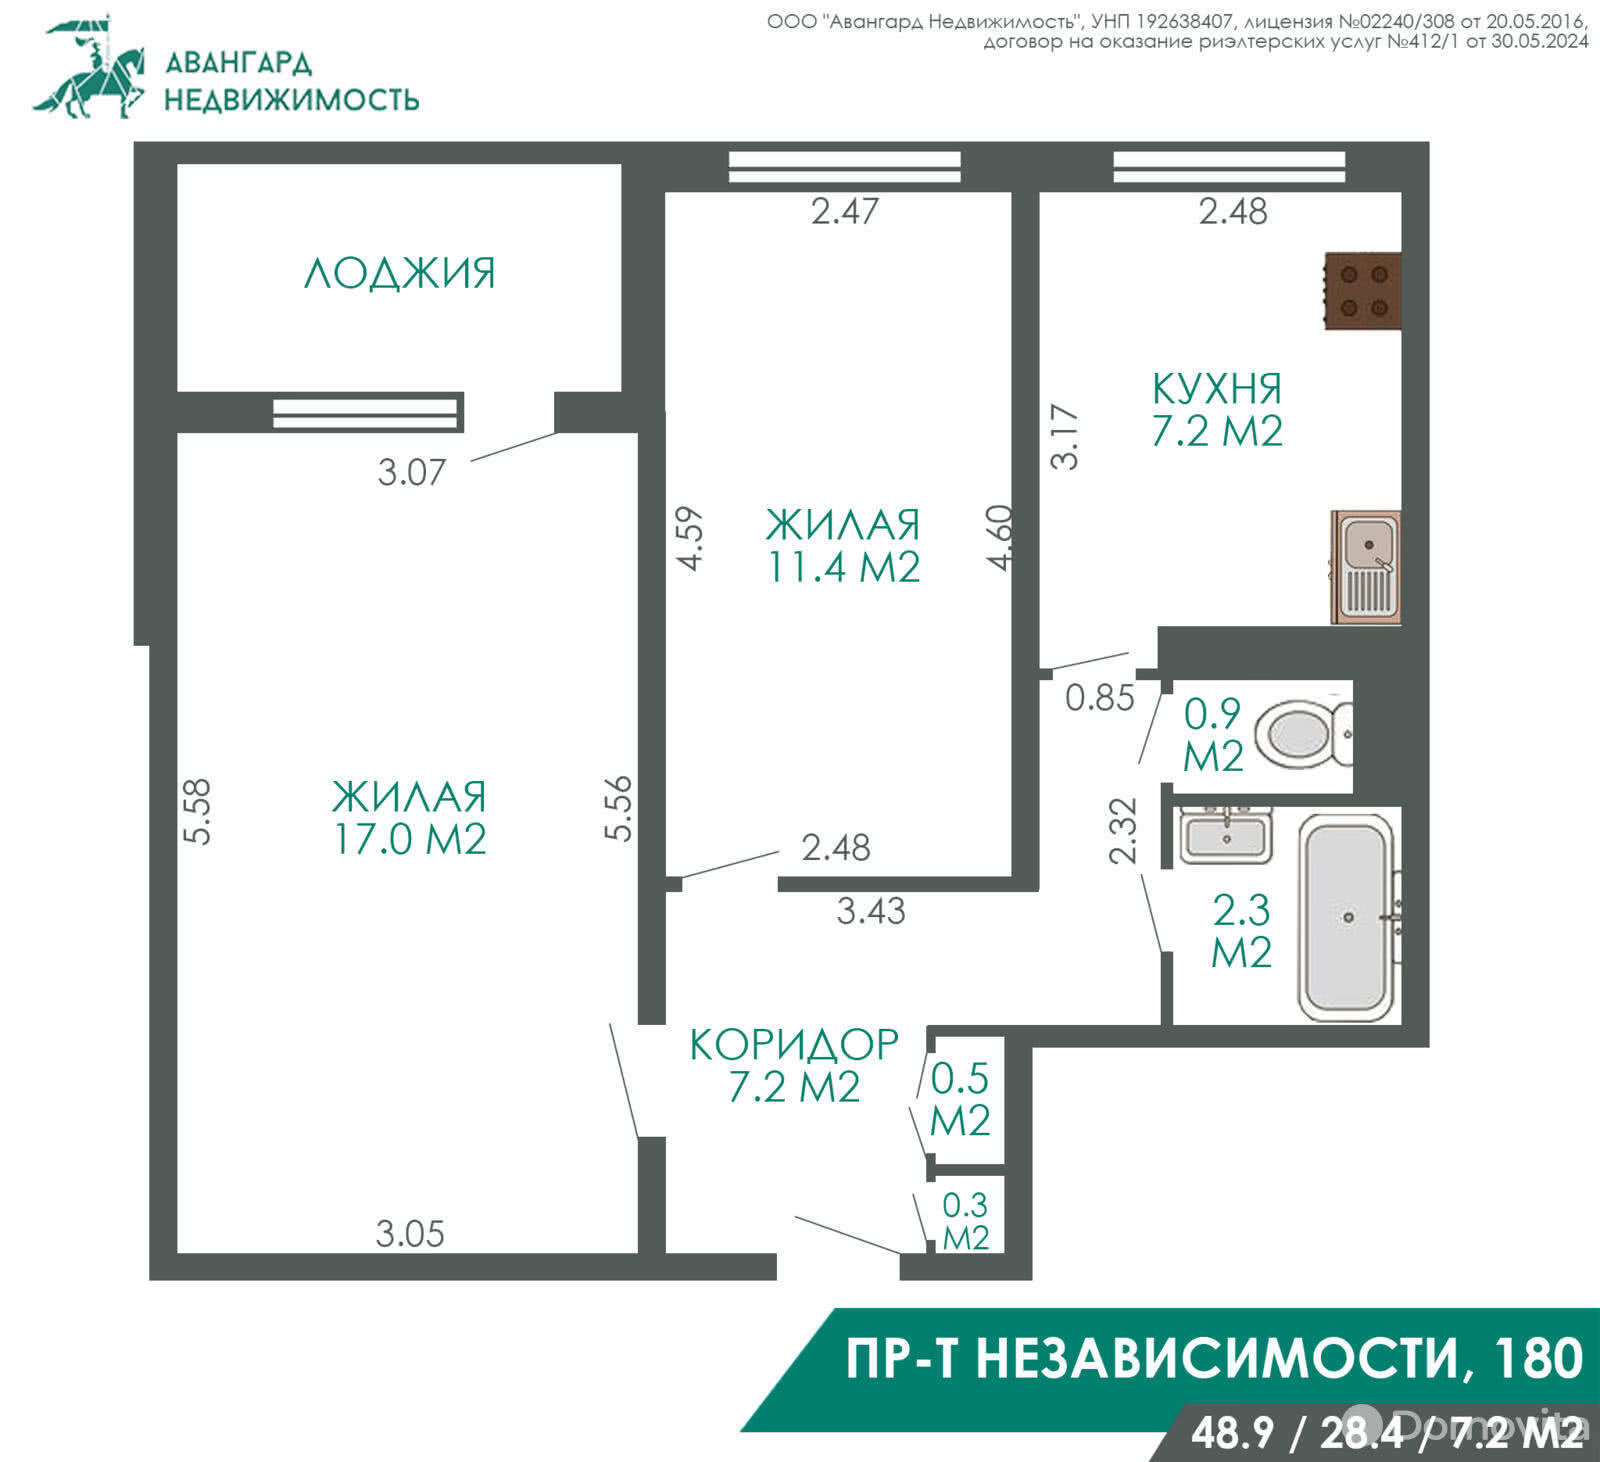 квартира, Минск, пр-т Независимости, д. 180, стоимость продажи 282 322 р.